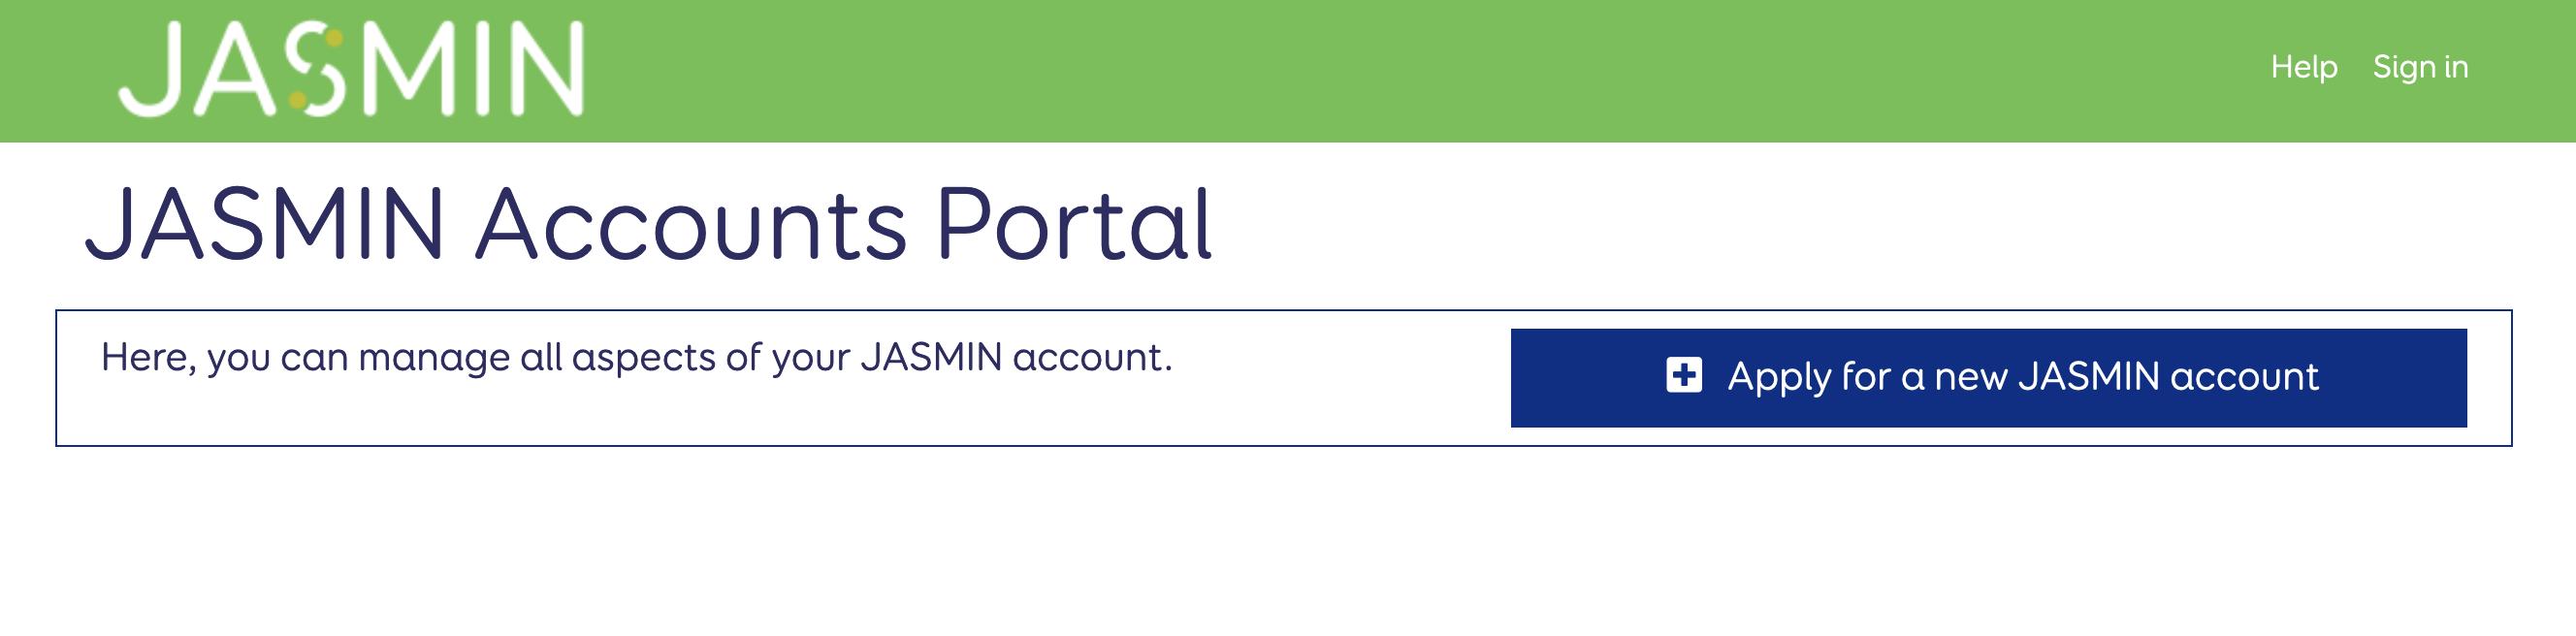 JASMIN accounts portal